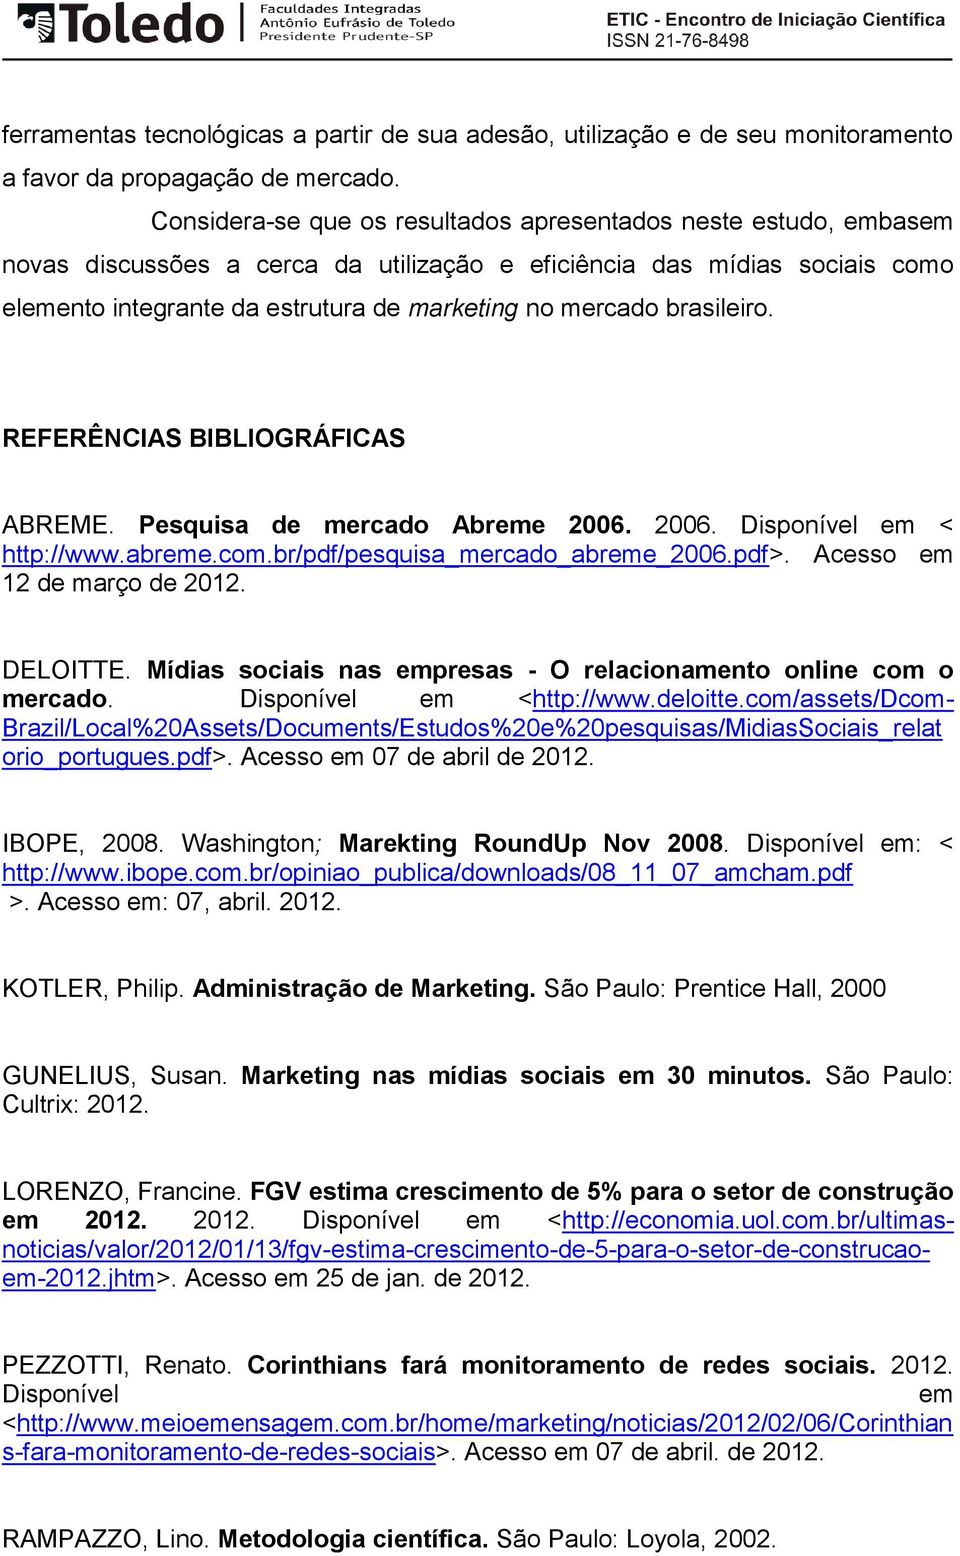 brasileiro. REFERÊNCIAS BIBLIOGRÁFICAS ABREME. Pesquisa de mercado Abreme 2006. 2006. Disponível em < http://www.abreme.com.br/pdf/pesquisa_mercado_abreme_2006.pdf>. Acesso em 12 de março de 2012.